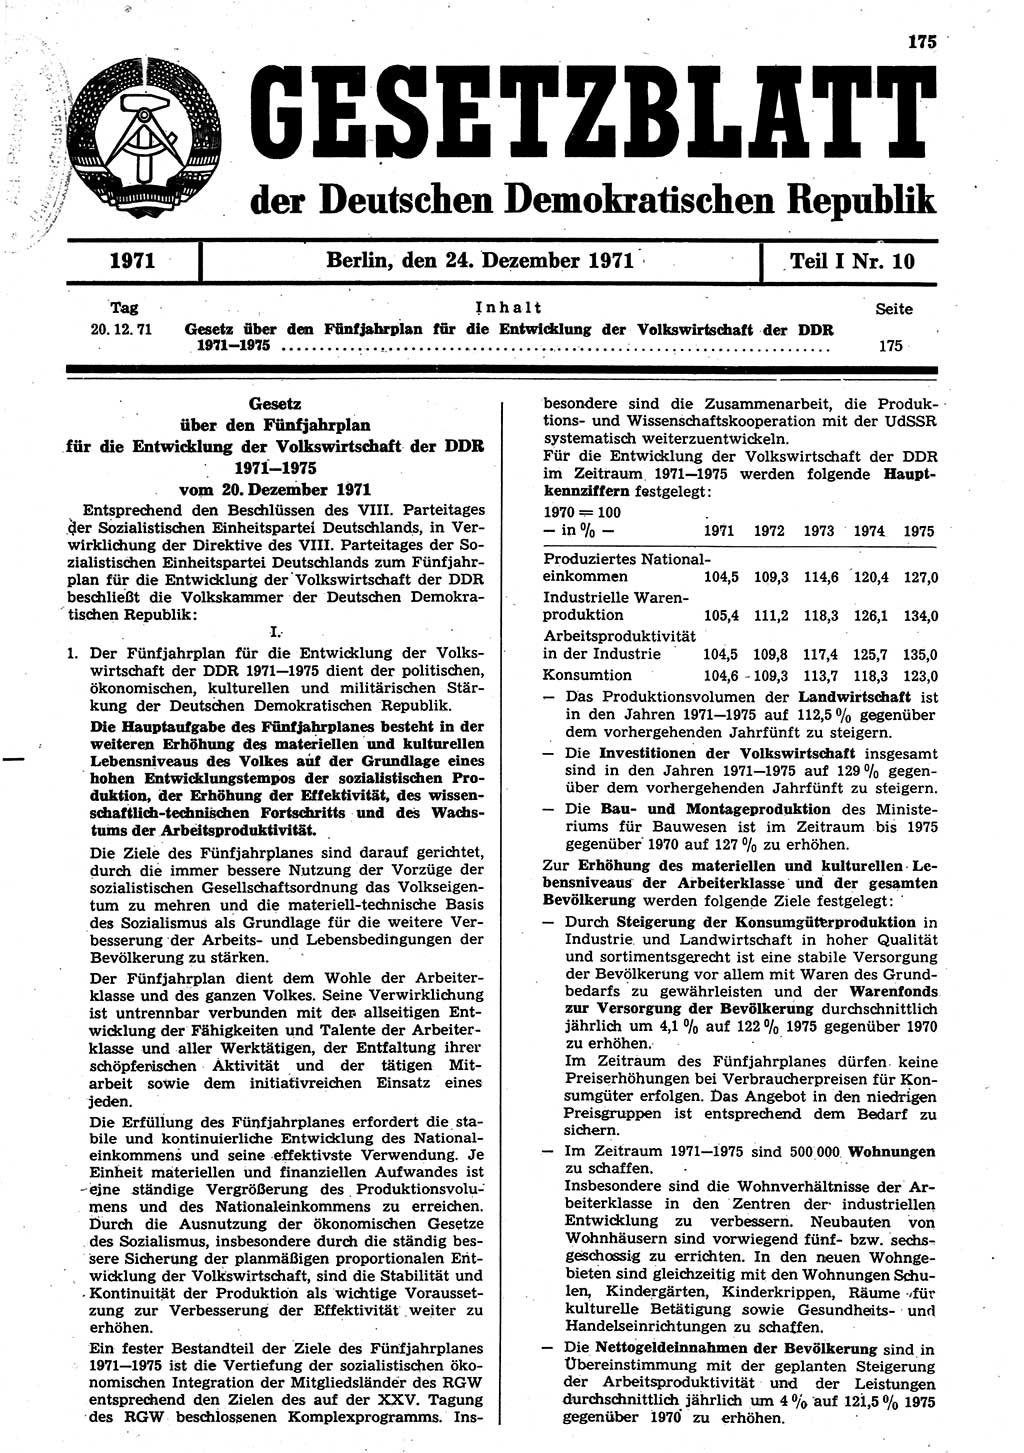 Gesetzblatt (GBl.) der Deutschen Demokratischen Republik (DDR) Teil Ⅰ 1971, Seite 175 (GBl. DDR Ⅰ 1971, S. 175)